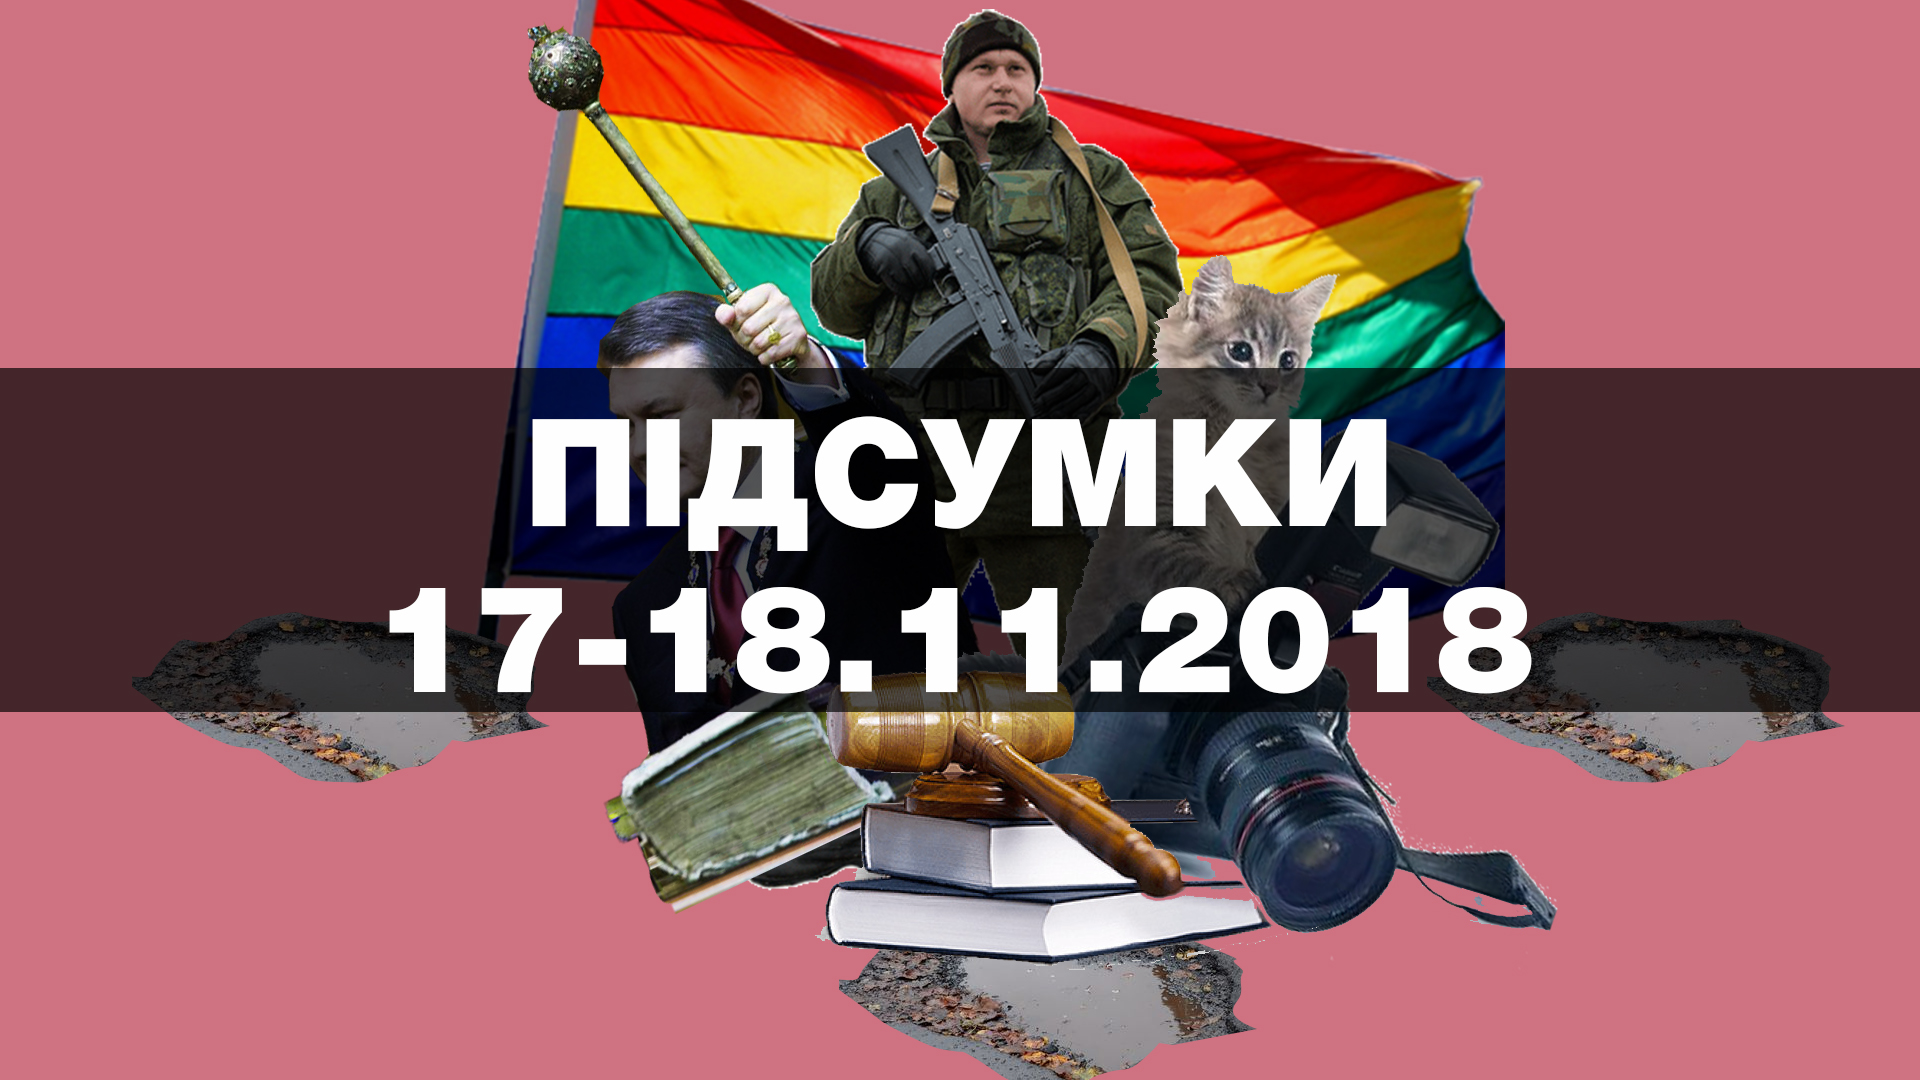 У Києві зірвали марш трансгендерів, Янукович отримав травму, активісти пікетували будинок Авакова — найважливіші новини вихідних за 60 секунд